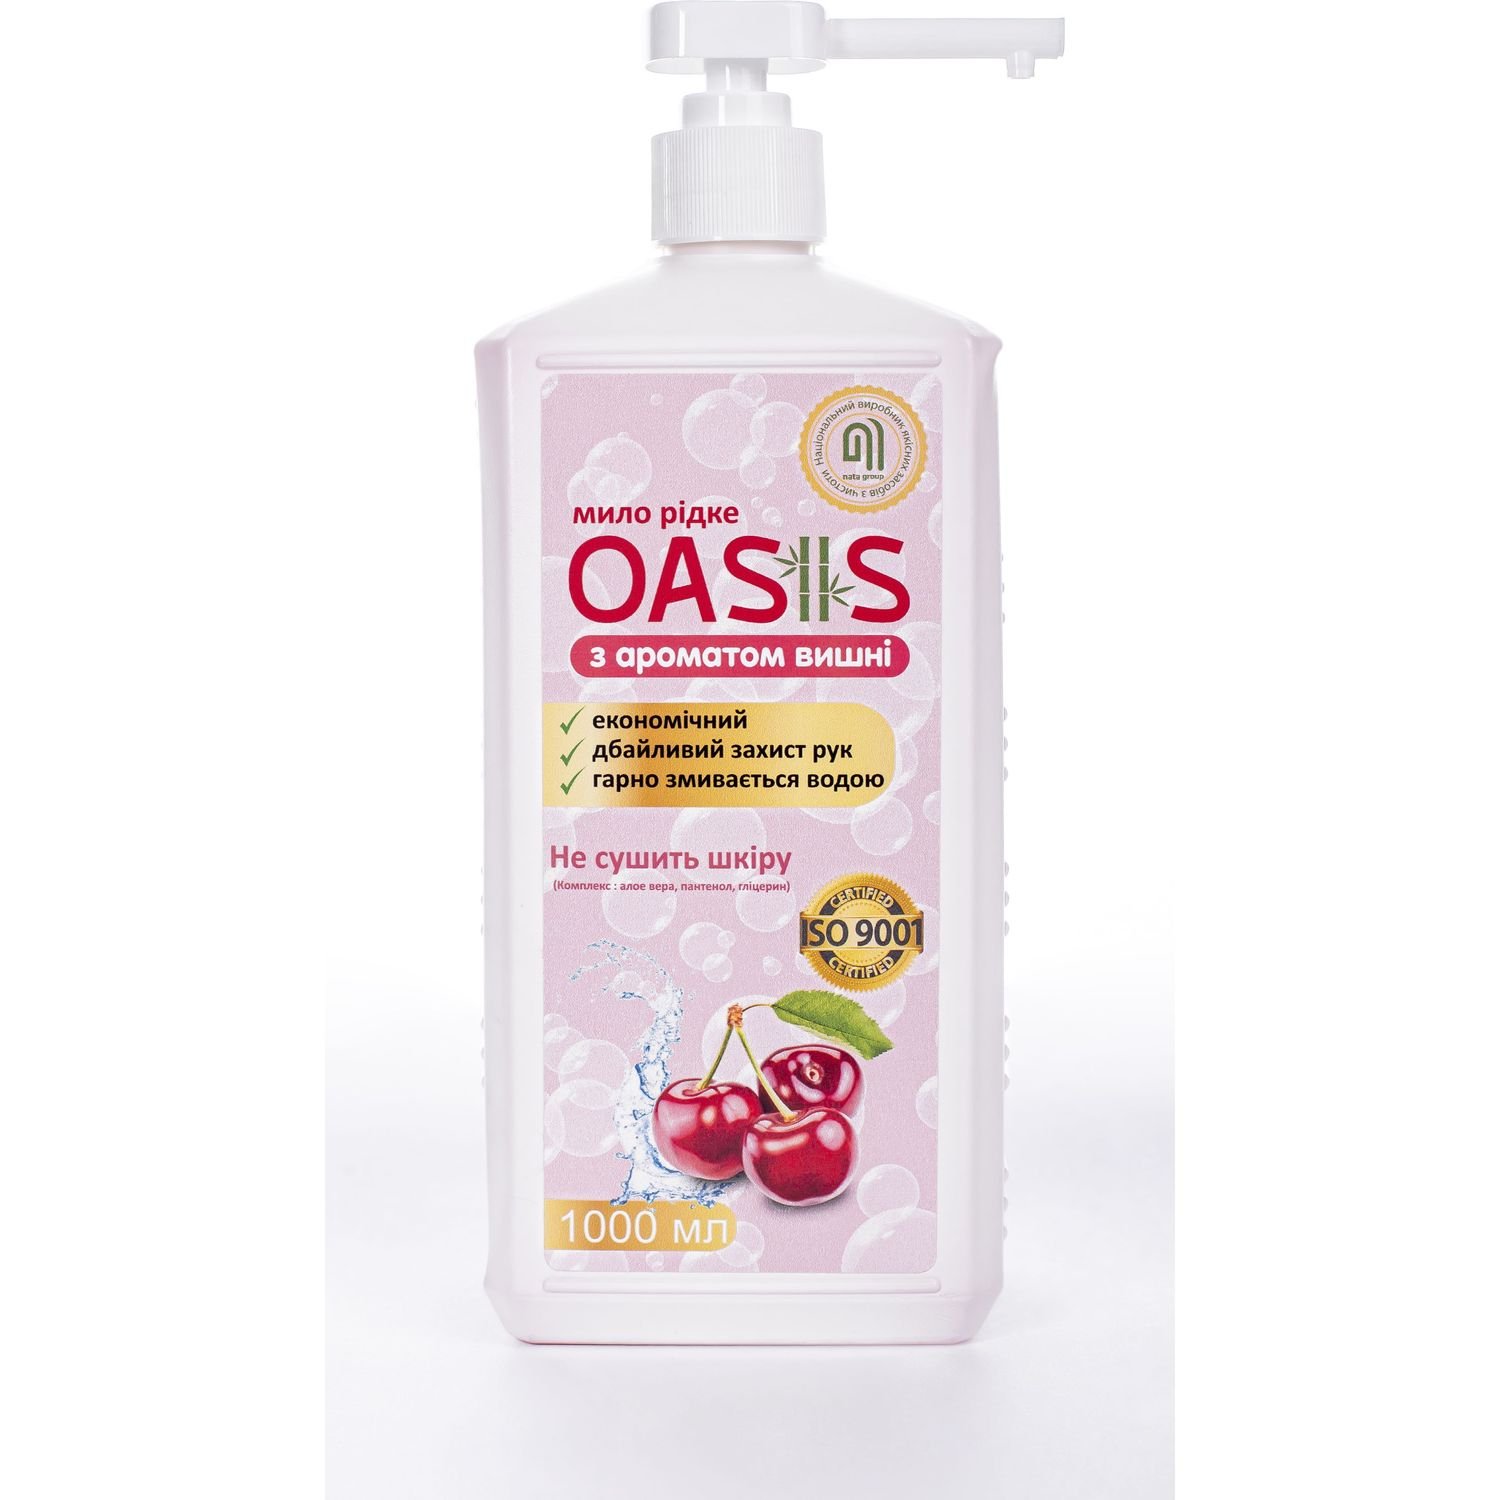 Мыло жидкое Nata-Oasis с ароматом вишни, с дозатором, 1000 мл - фото 2